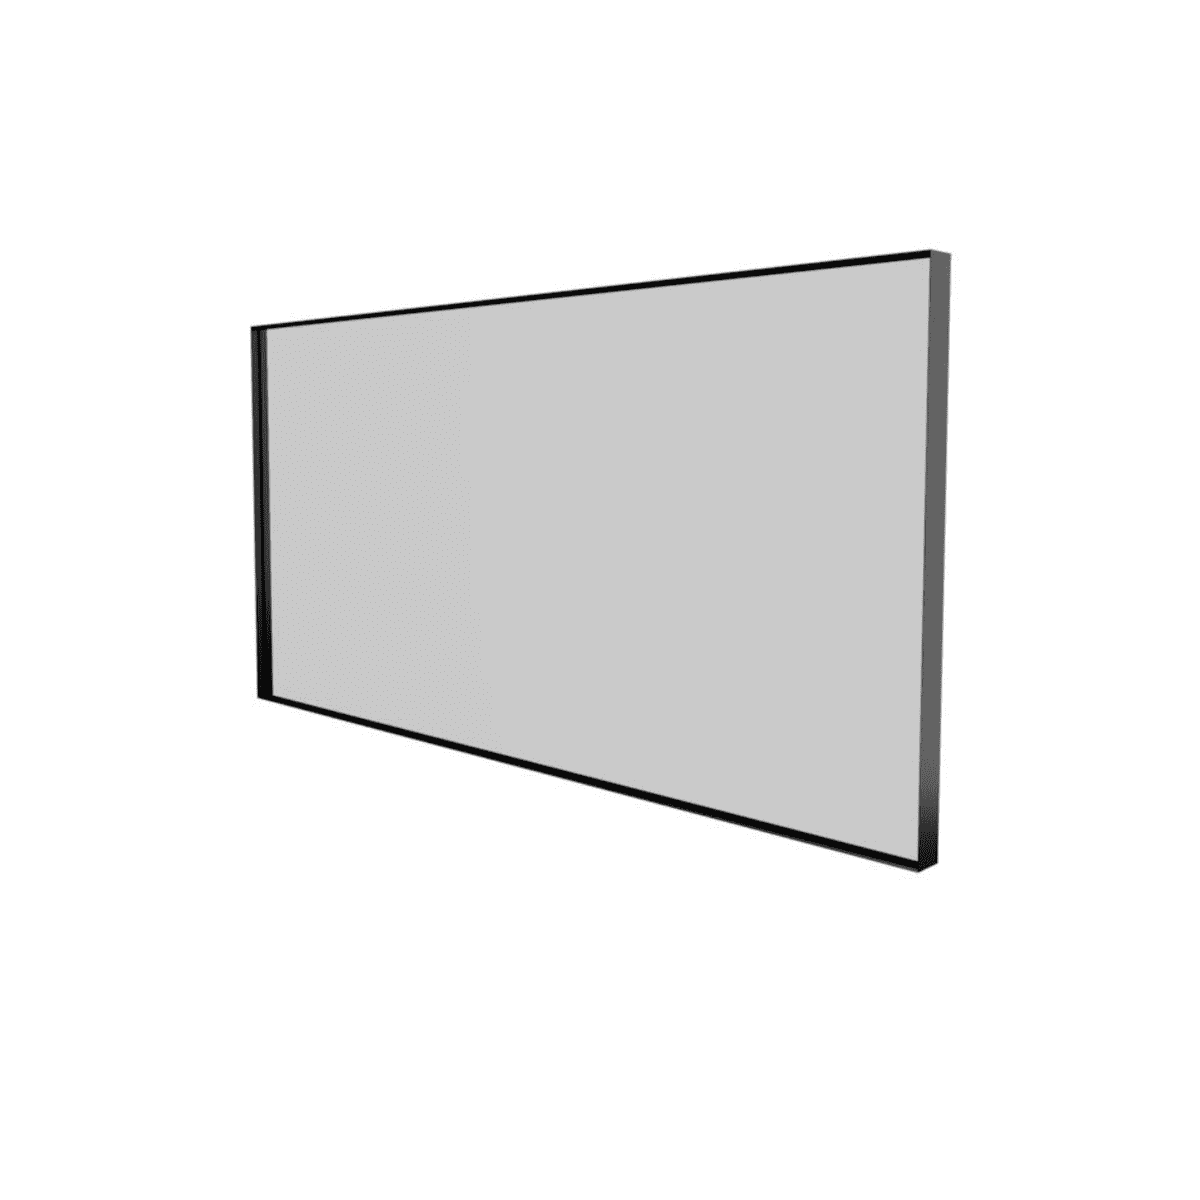 Billede af Sanibell Basicline spejl - 120x60cm - mat sort aluramme